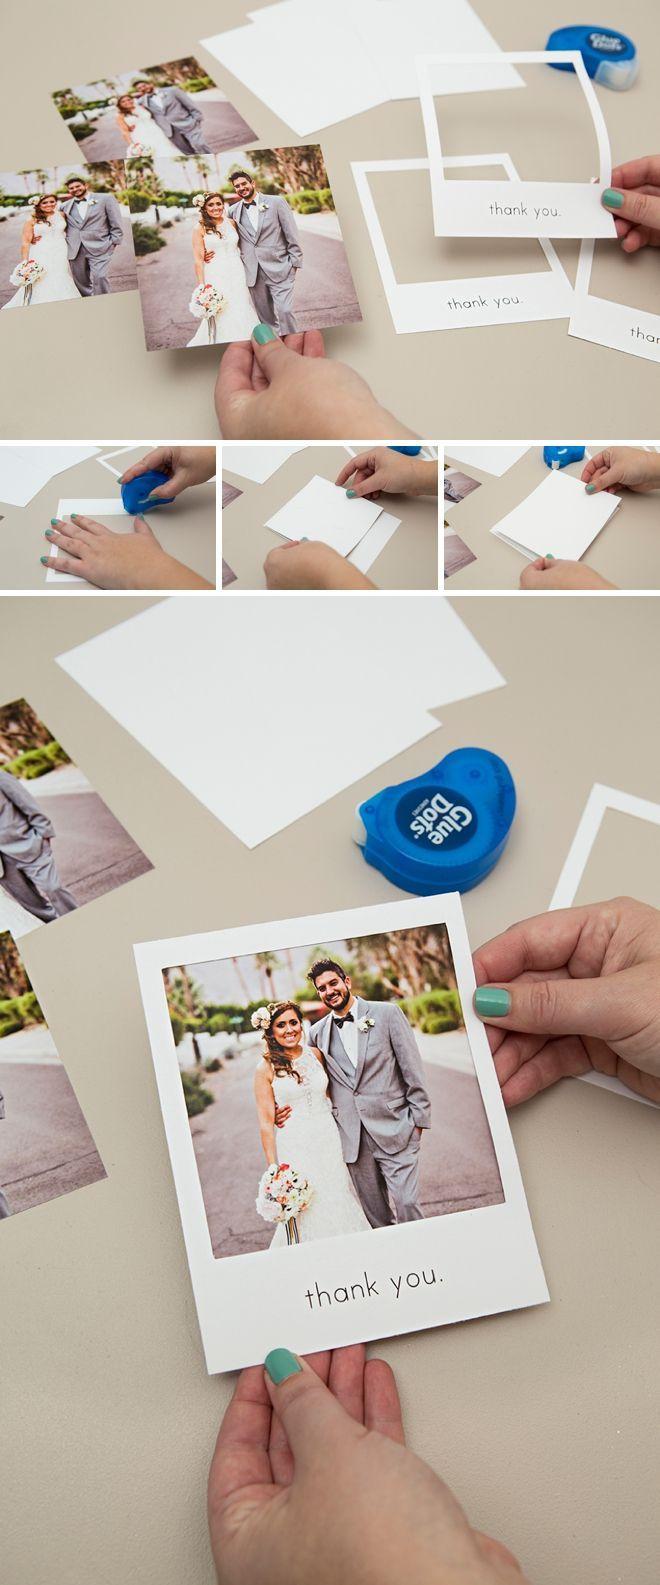 زفاف - Check Out These Adorable DIY "Polaroid" Photo Thank You Cards!